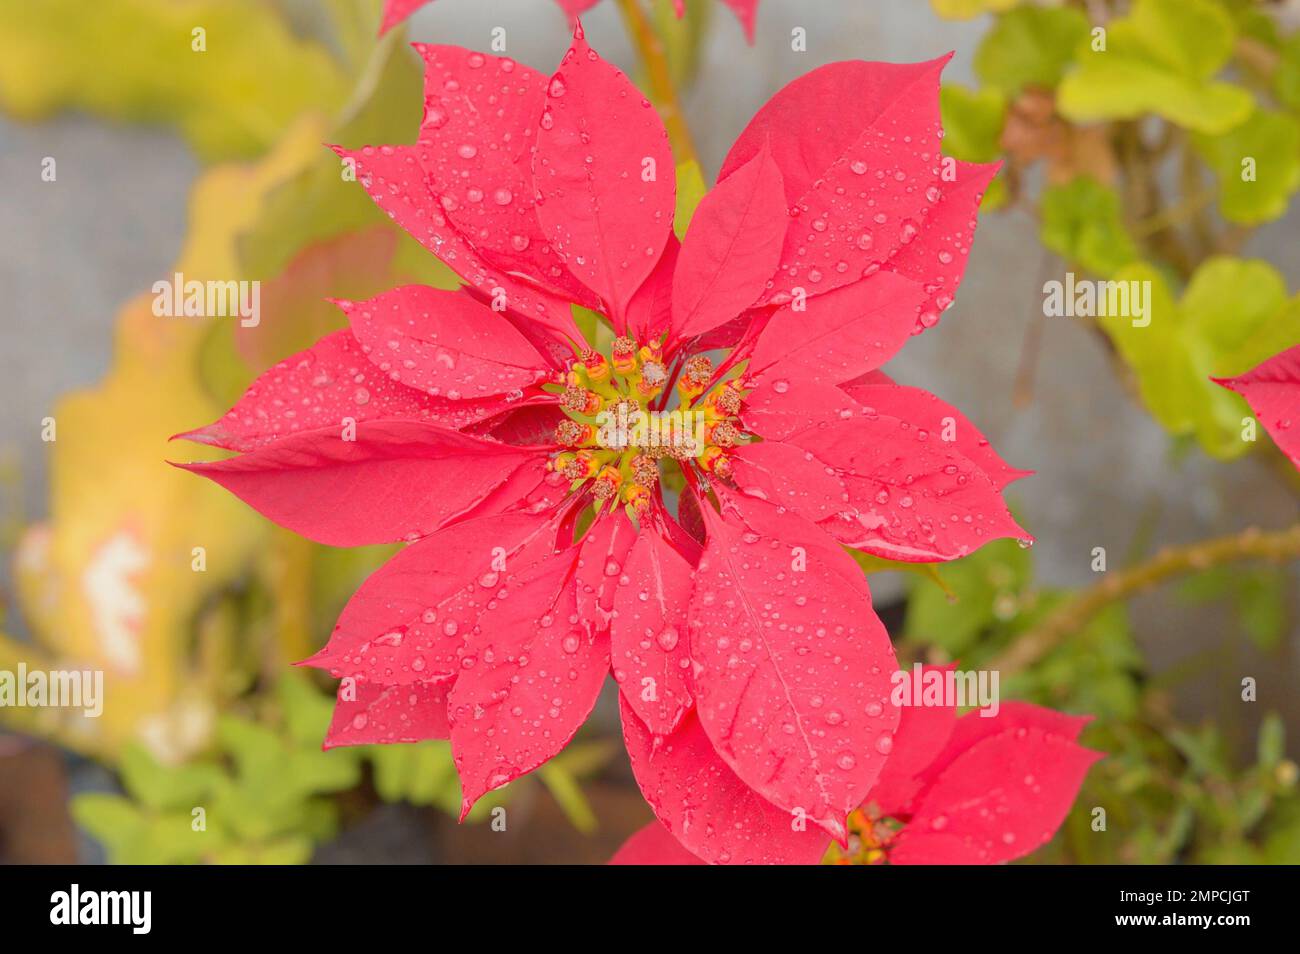 Rote Blume, durchnässt vom Regen. Draufsicht. Vollformat. Wunderschöne Natur Im Hintergrund. Stockfoto